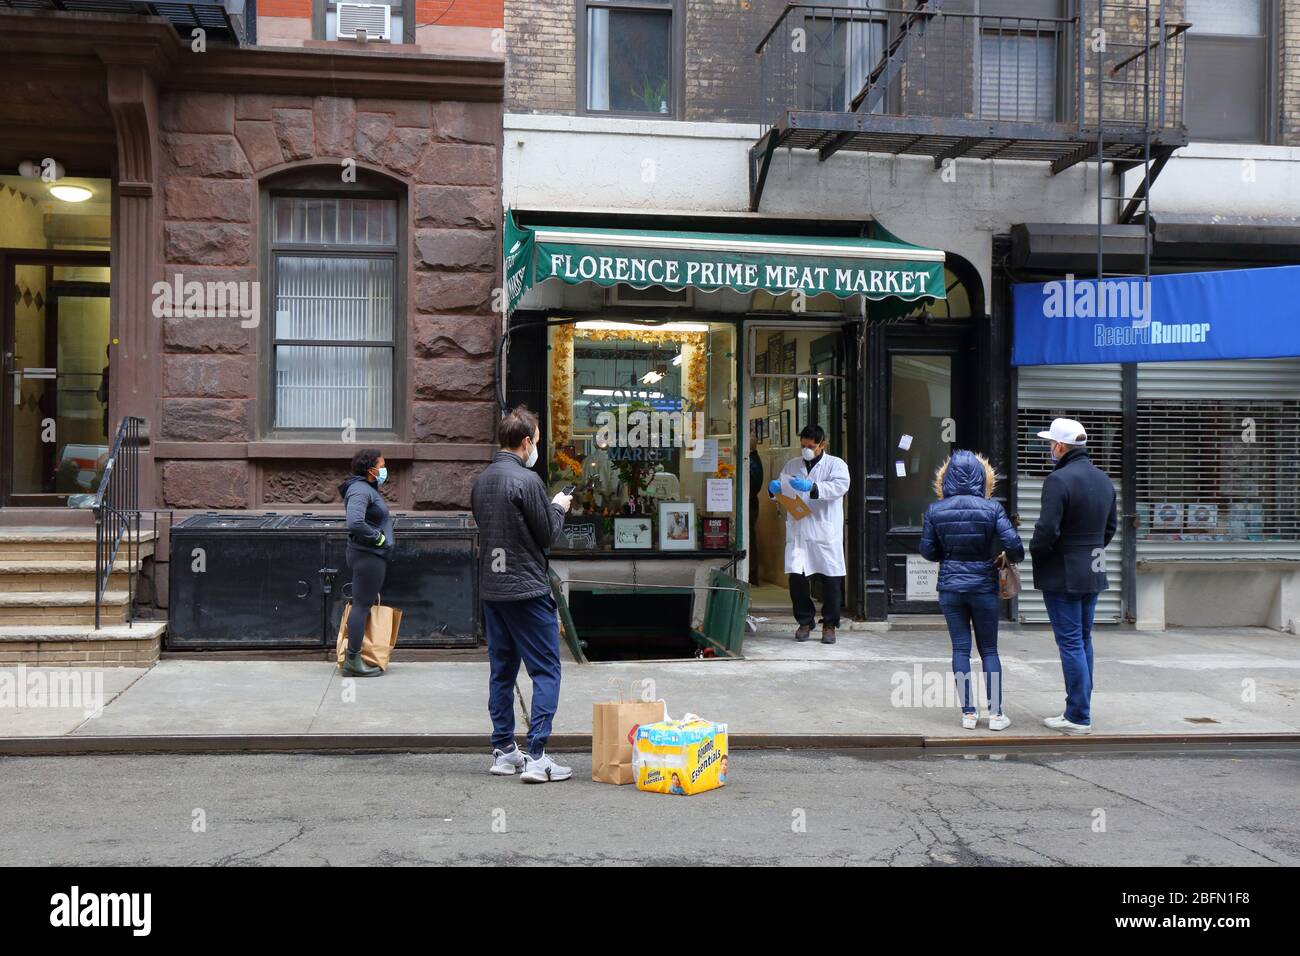 La gente se distanció social y llevaba máscaras mientras esperaban para entrar en una carnicería durante el coronavirus COVID-19. Nueva York, 18 de abril de 2020. Foto de stock